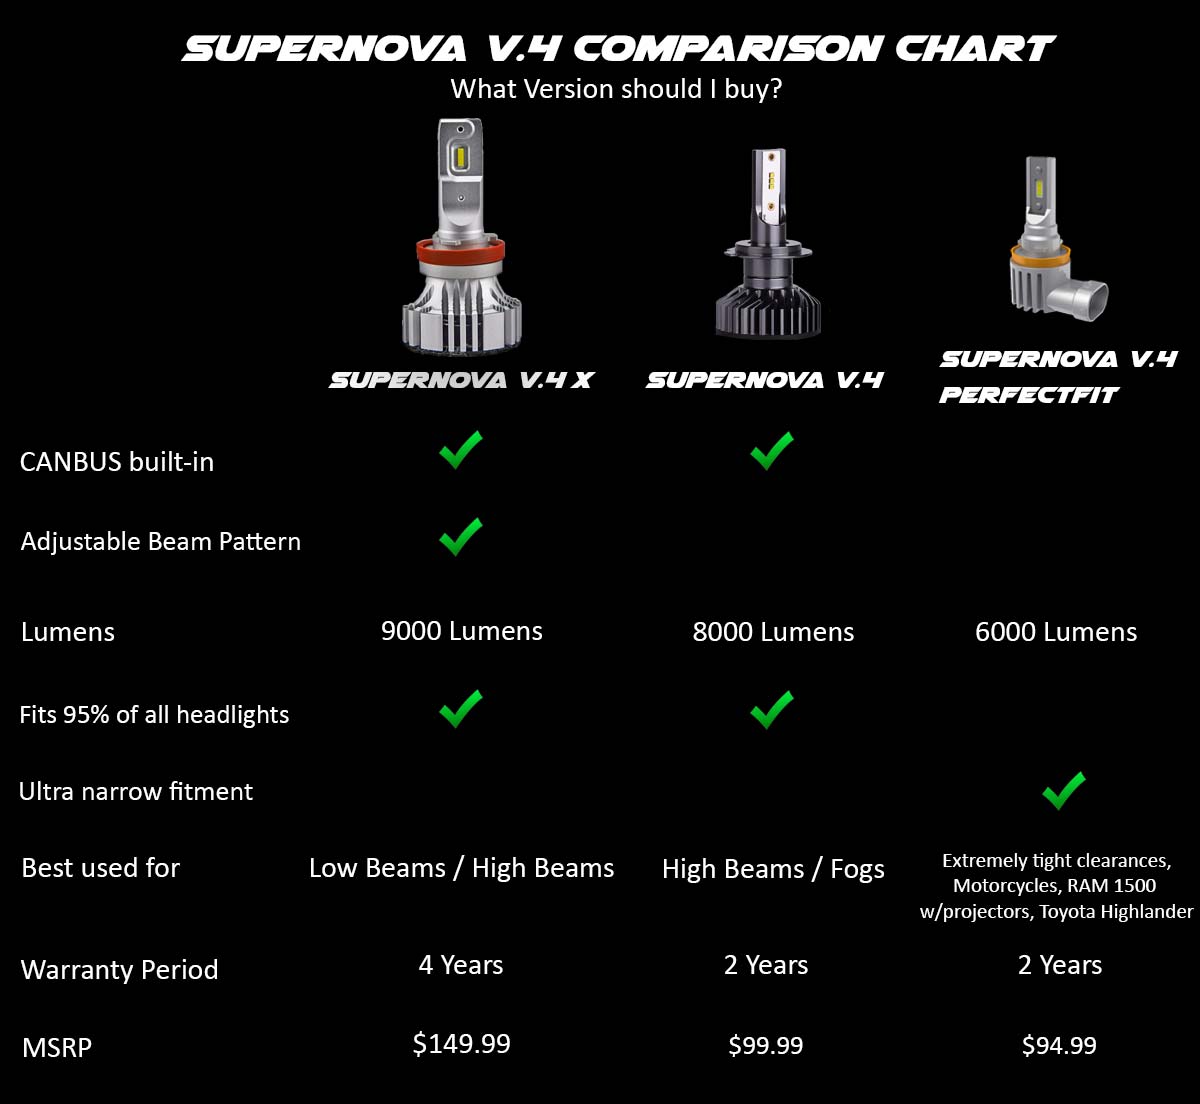 Supernova V.4 comparison chart of V.4, V.4 X, and V.4 PerfectFit